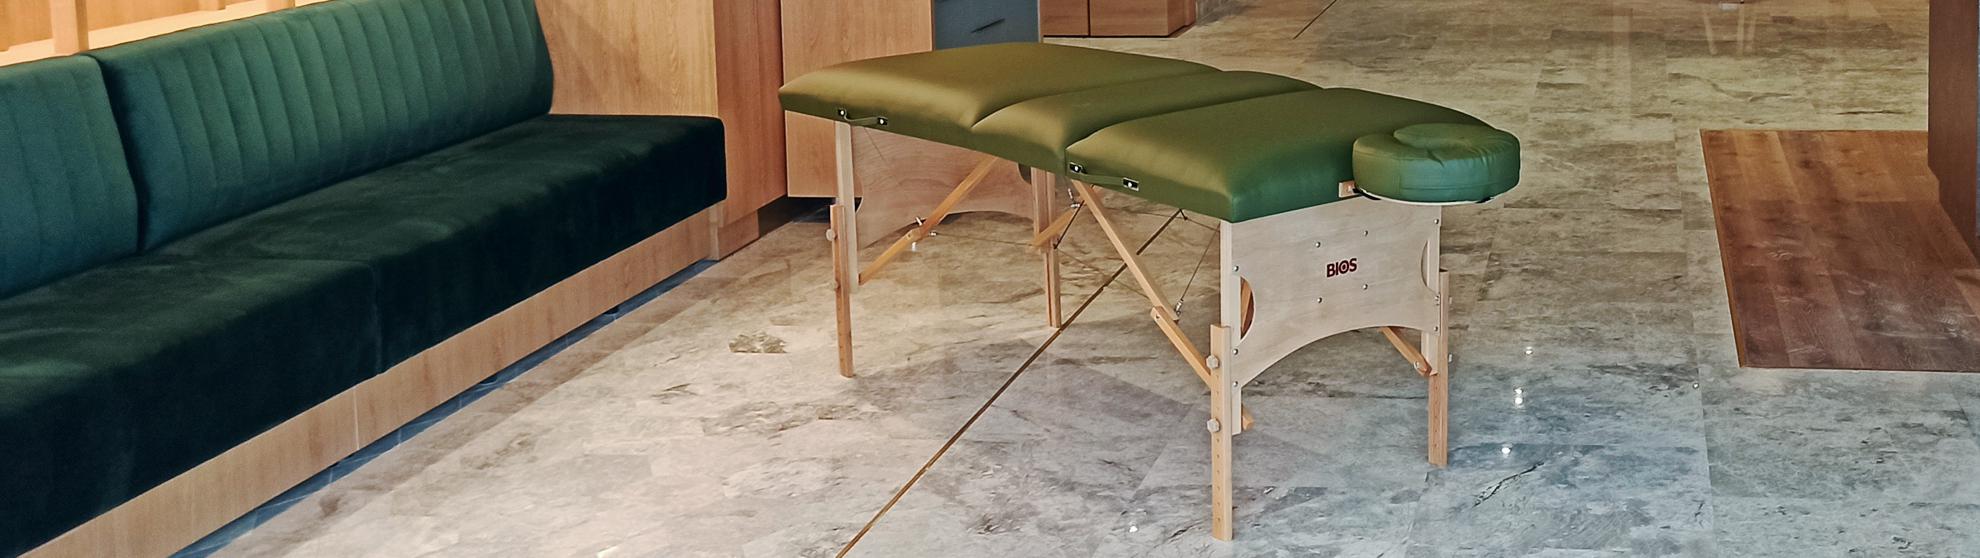 Masă de masaj portabilă, model Confort, finisaj lemn natur, tapiţerie verde, fabricată în România!